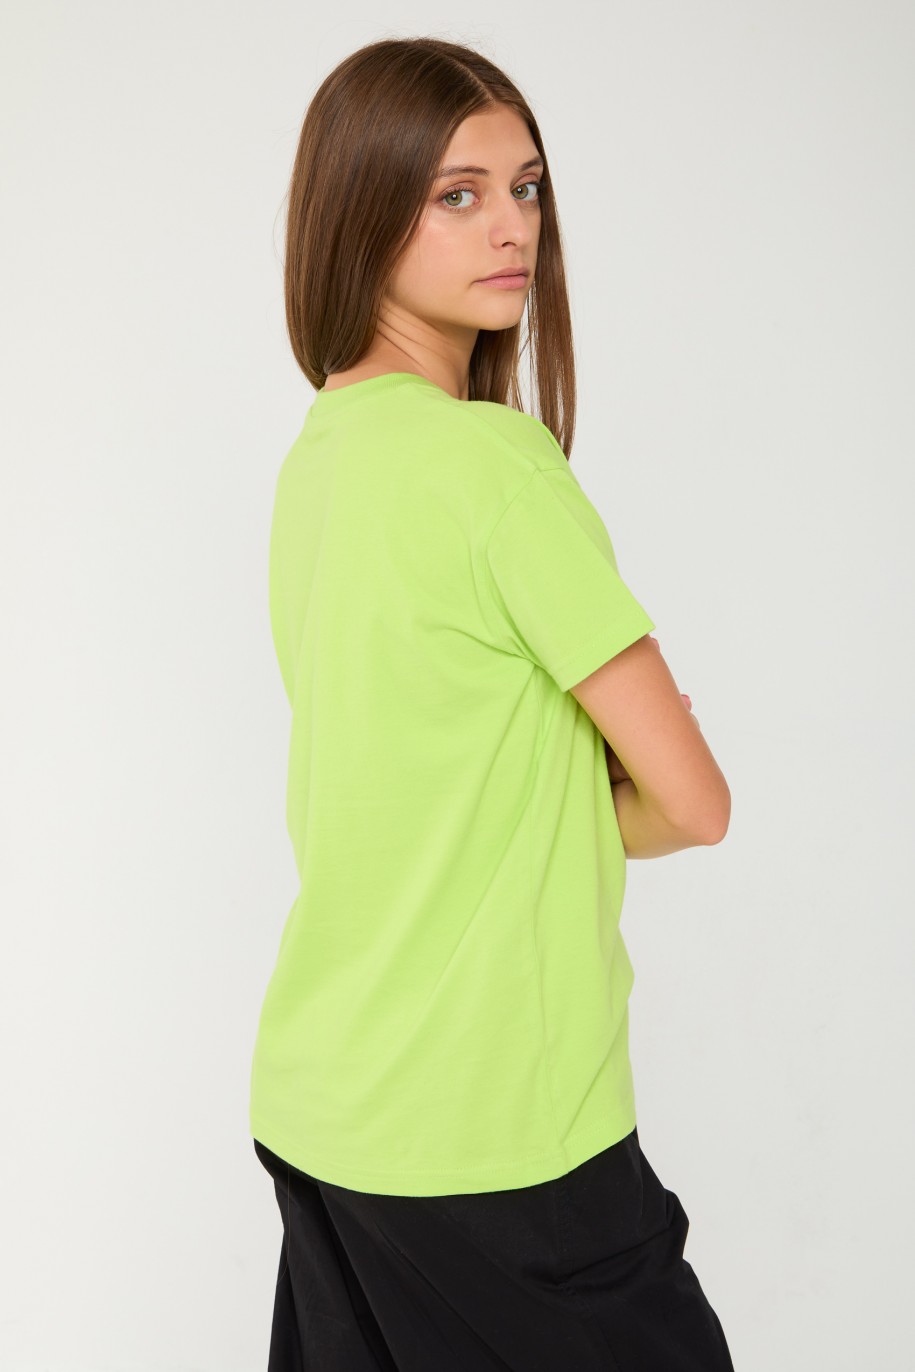 Limonkowy T-shirt z błyszczącym nadrukiem - 44656